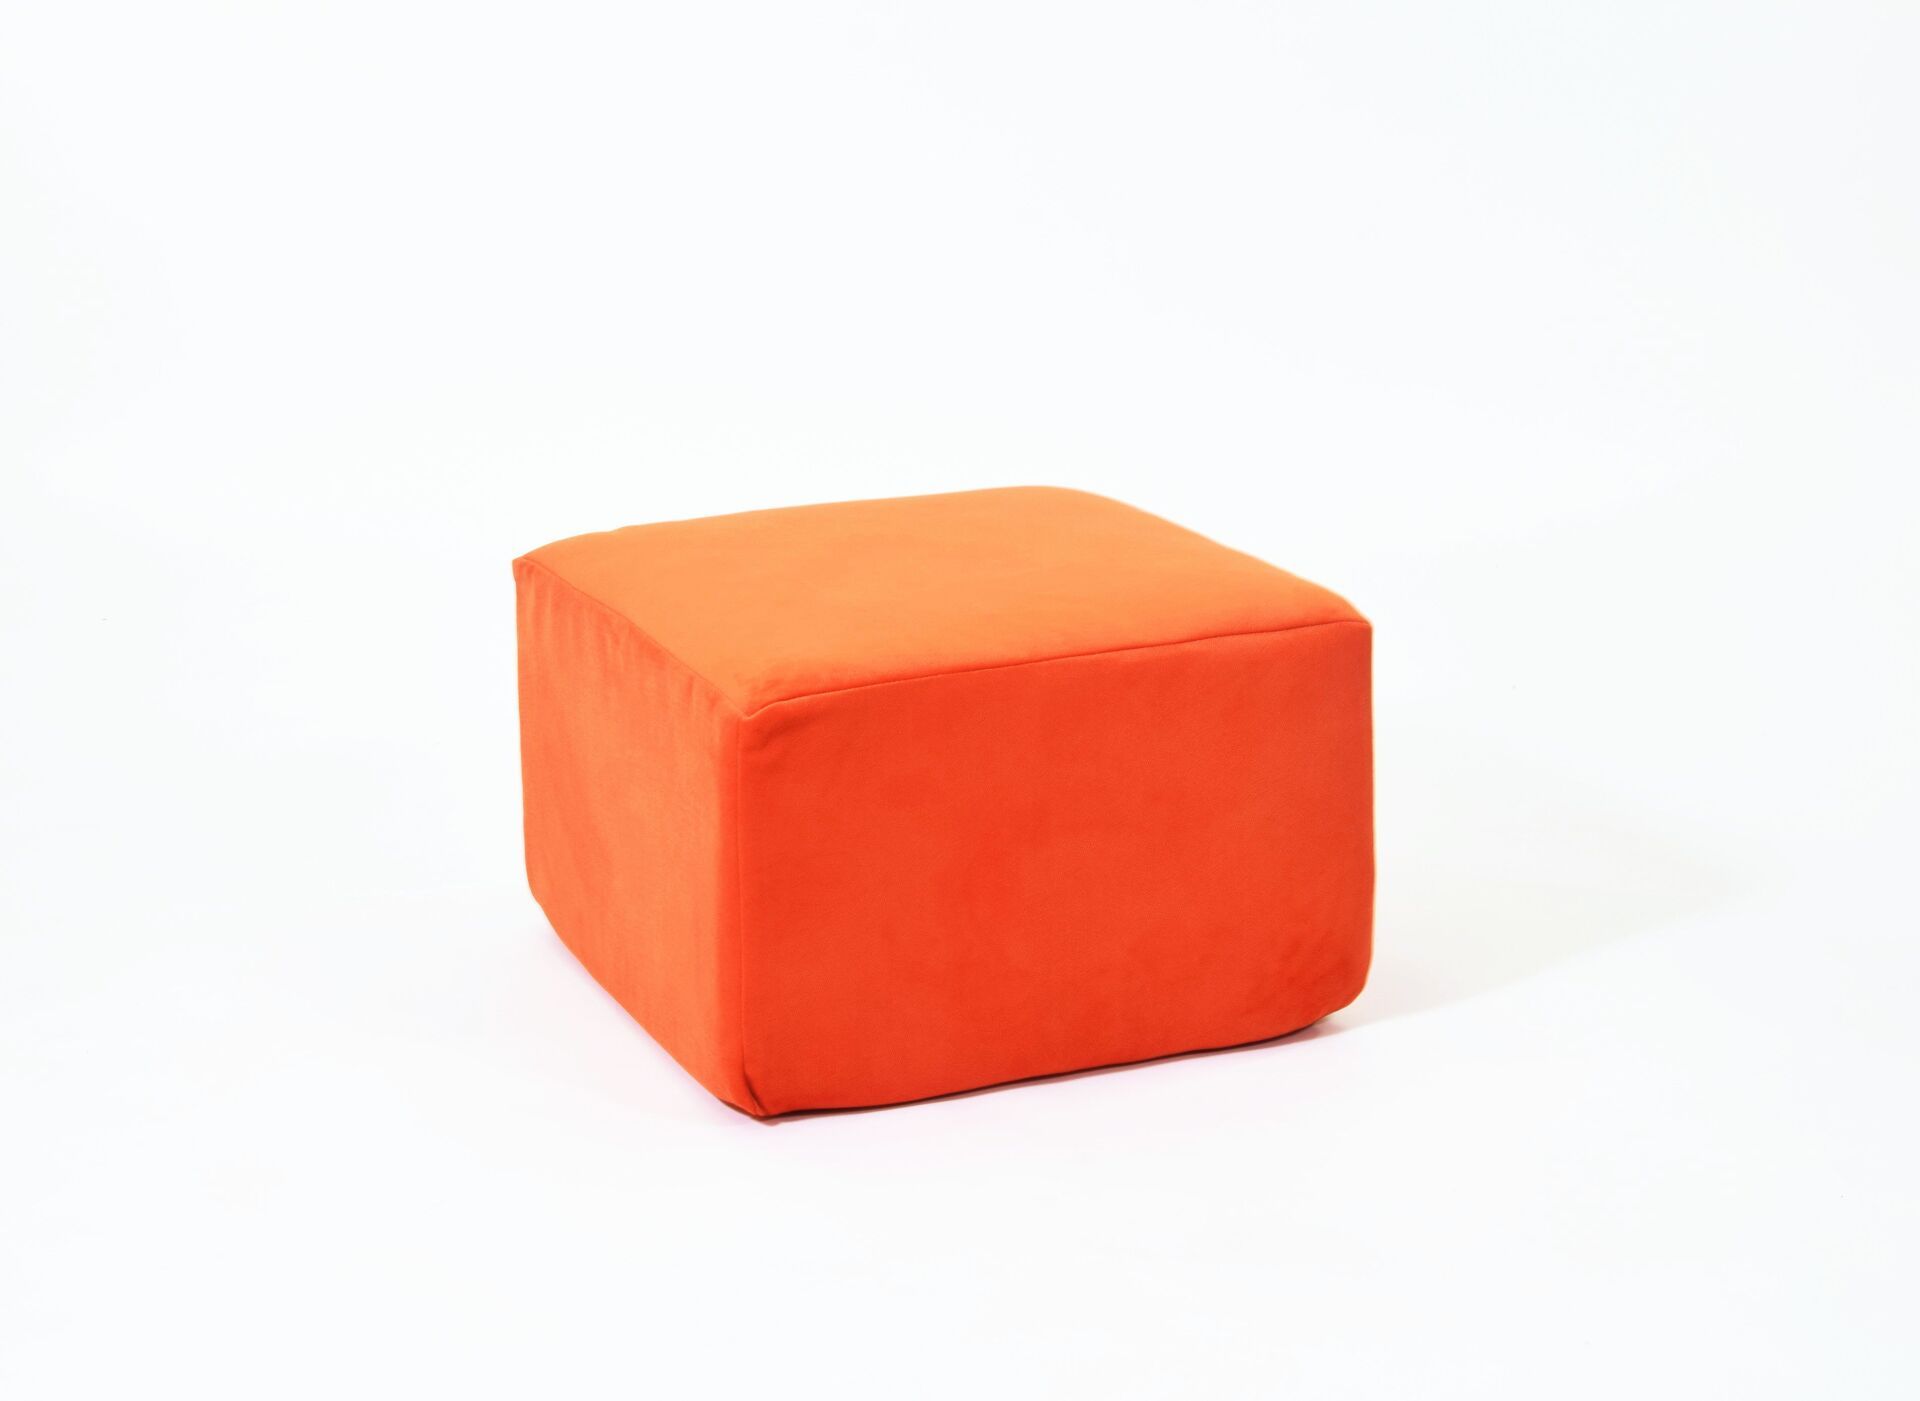 Пуф Dreambag Airpuf оранжевый